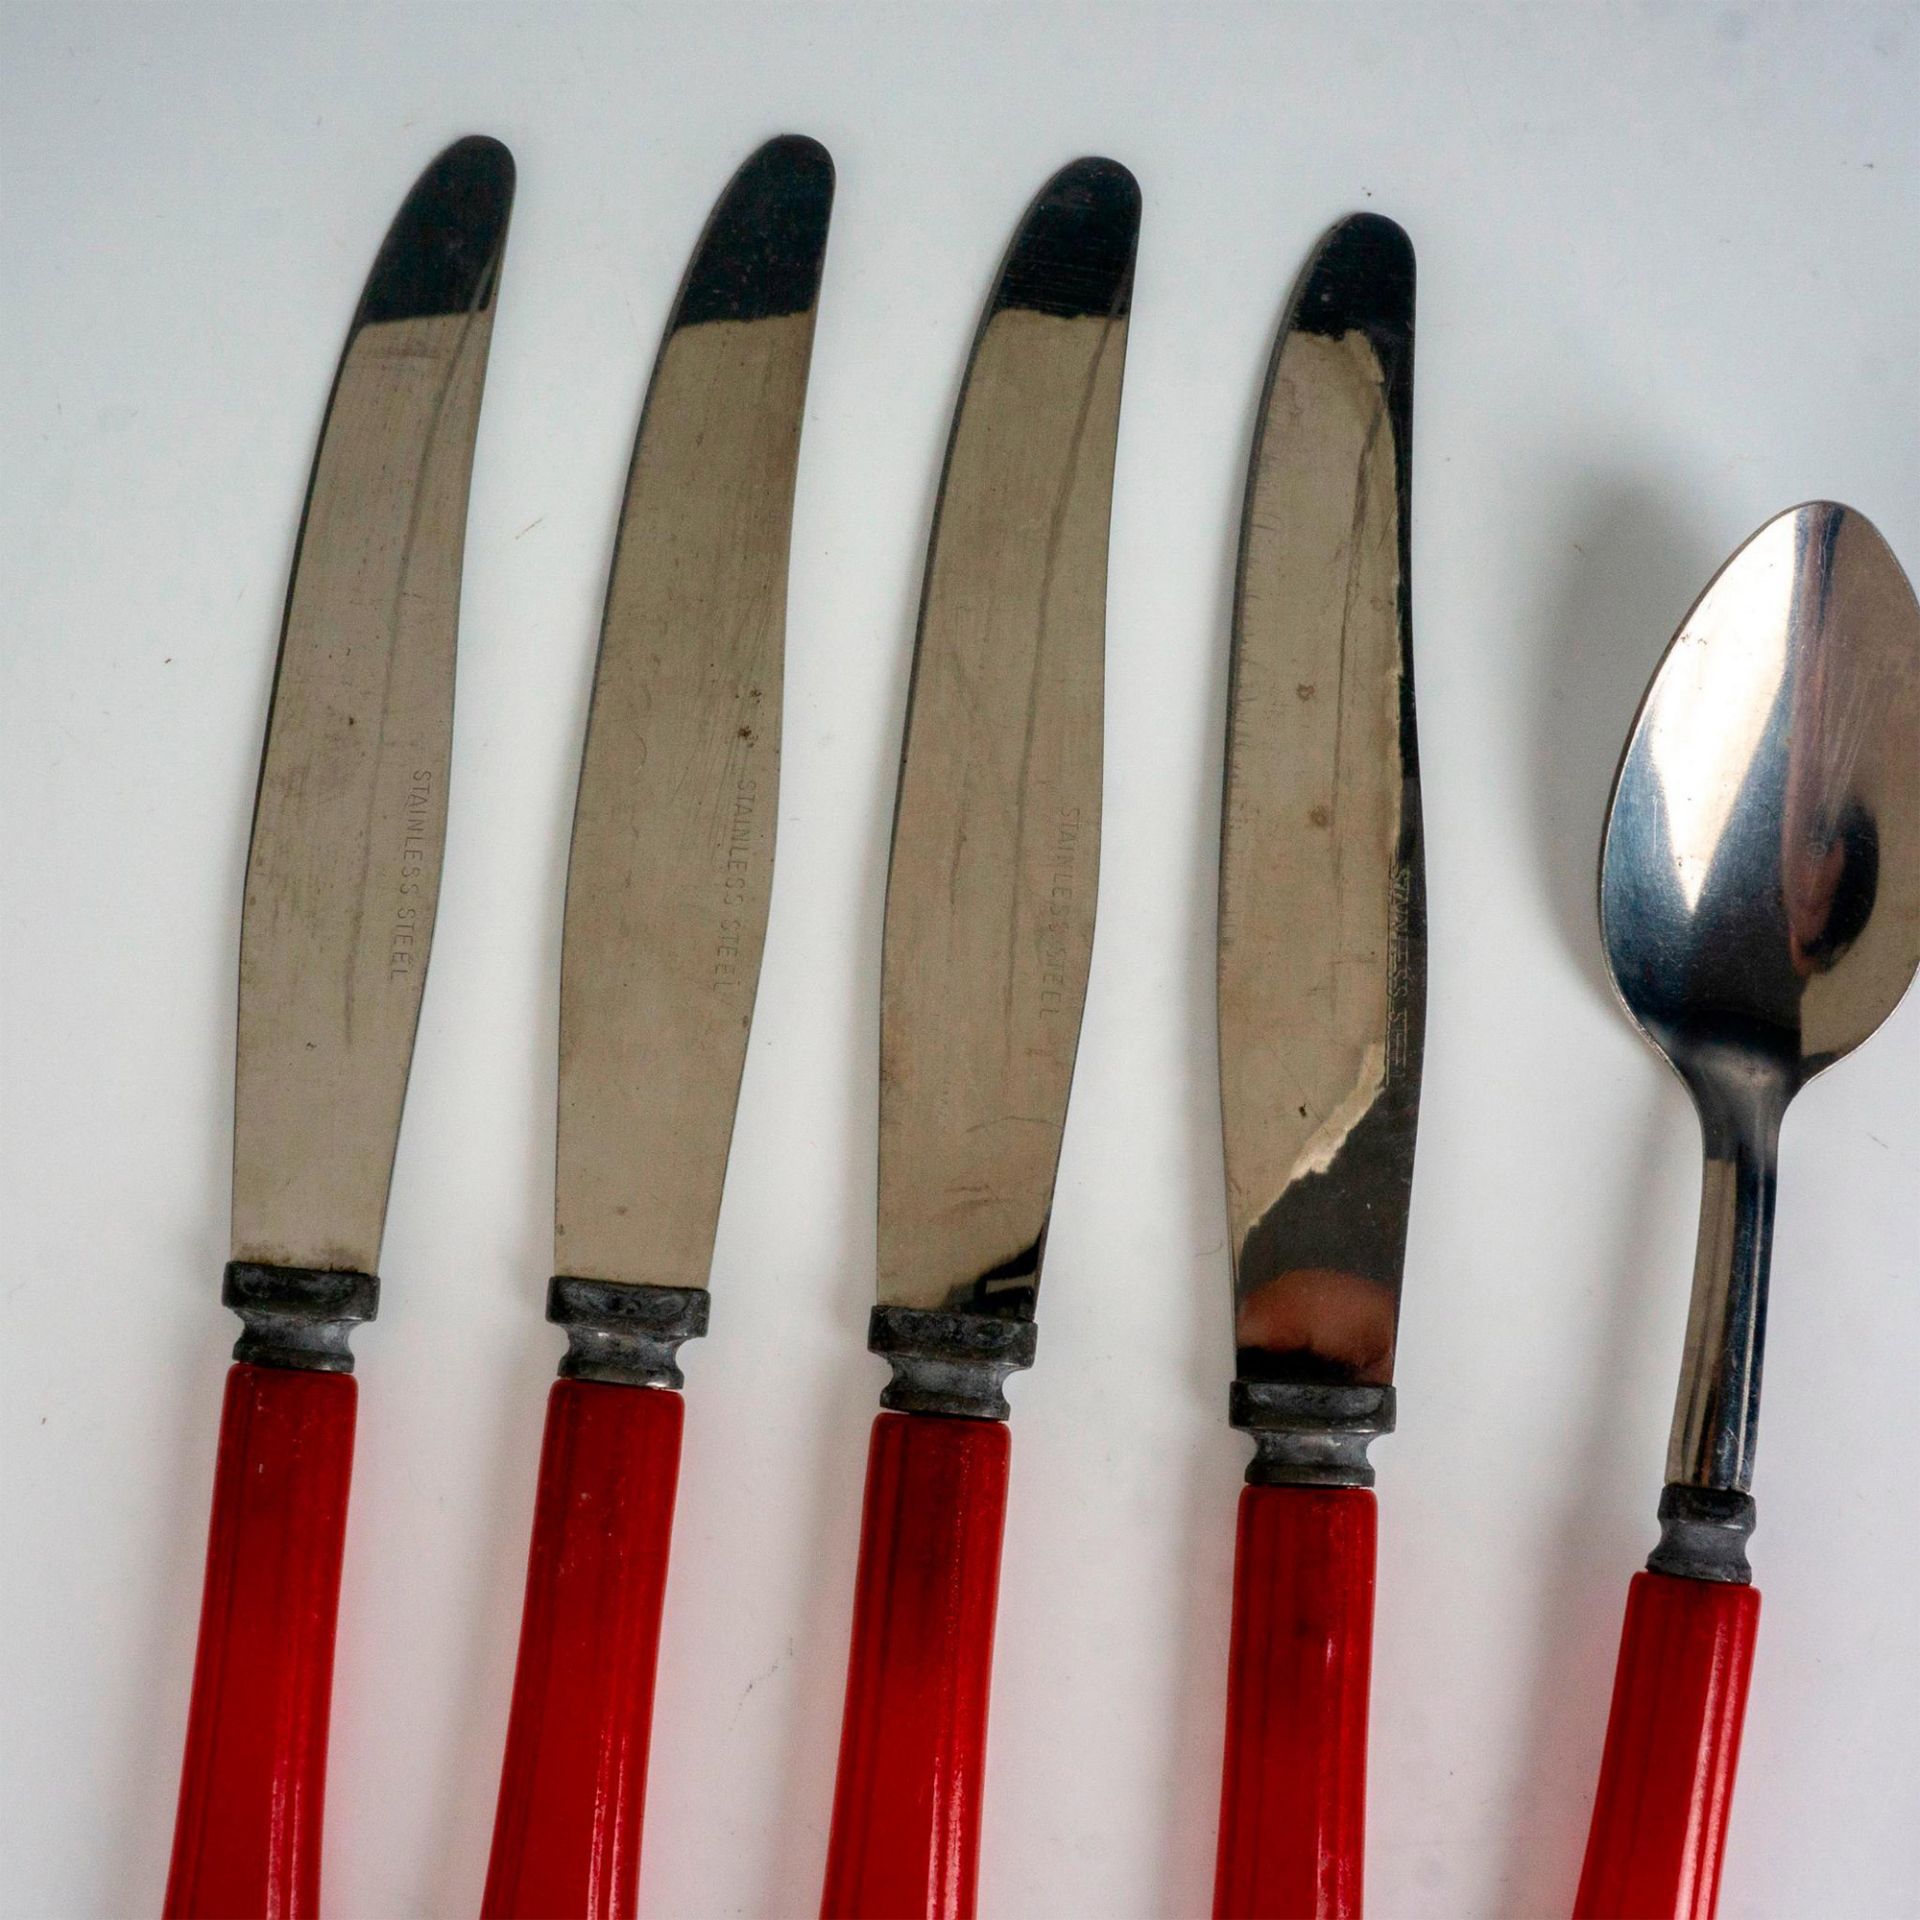 12pc Vintage Red Bakelite Silverware, Forks, Knives, Spoons - Image 2 of 5